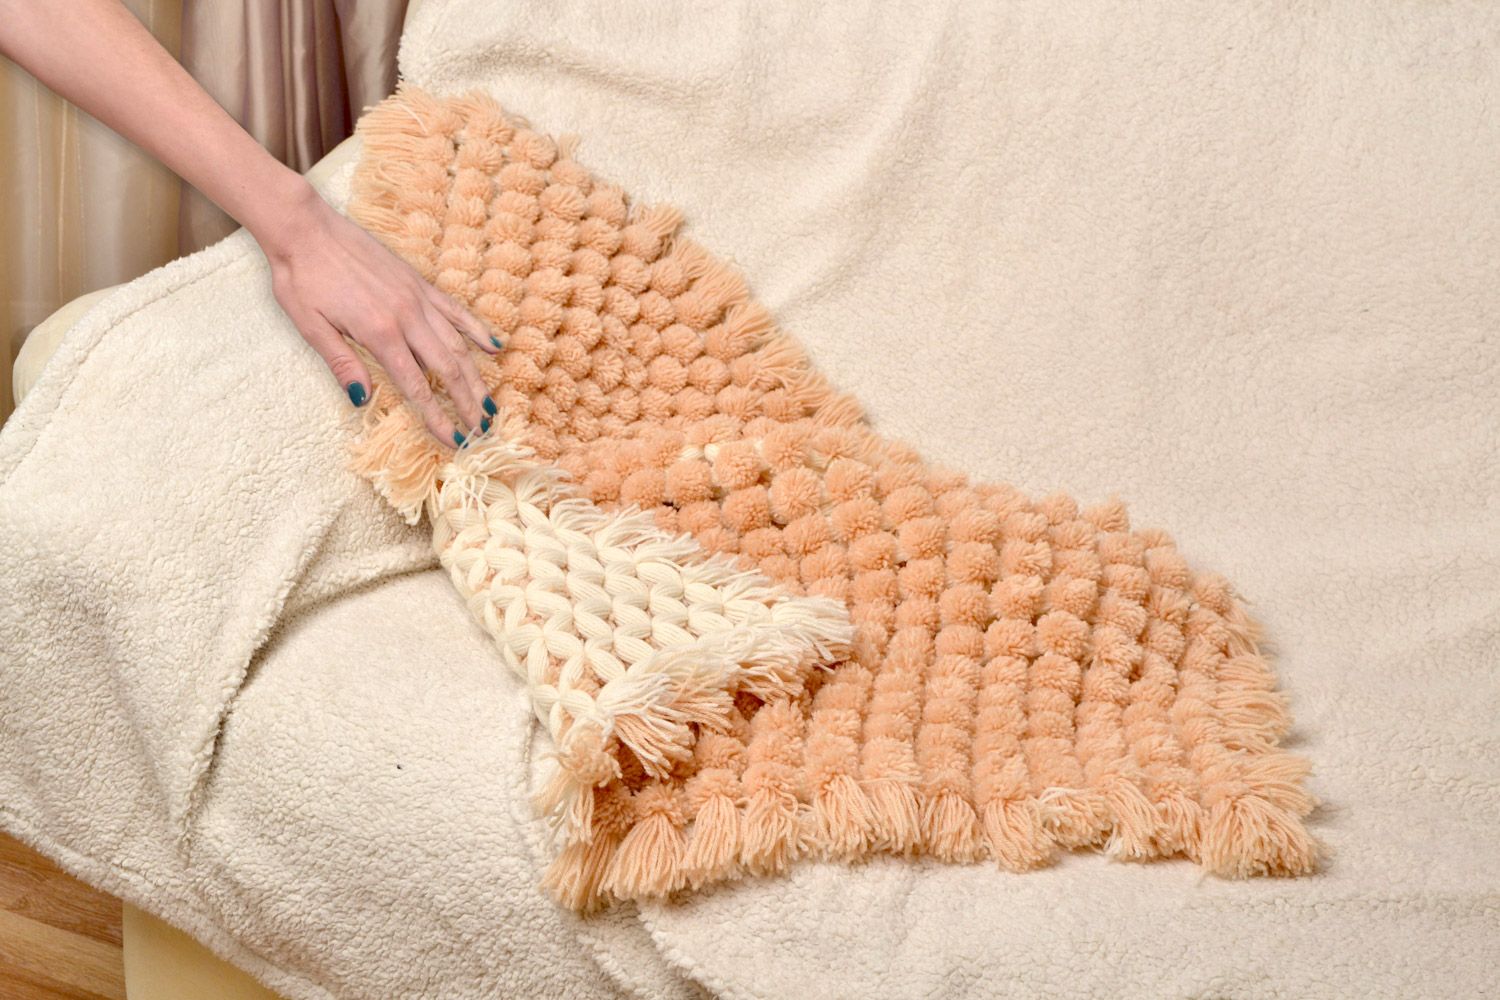 Детское одеяло плетеное вручную из шерсти и акрила мягкое теплое бежевого цвета  фото 2